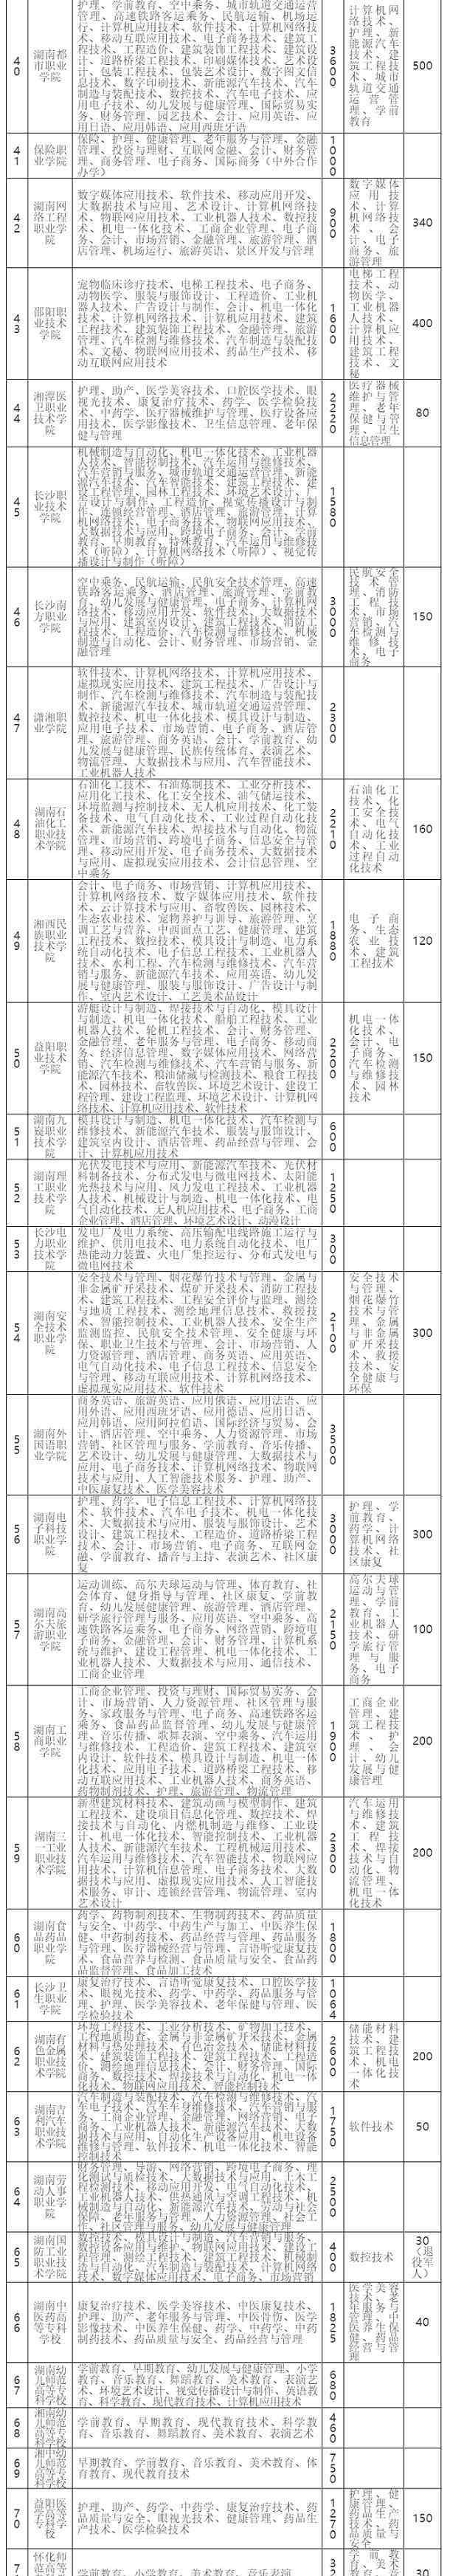 长沙铁道兵学院 2020湖南高职单招院校名单71所【完整】